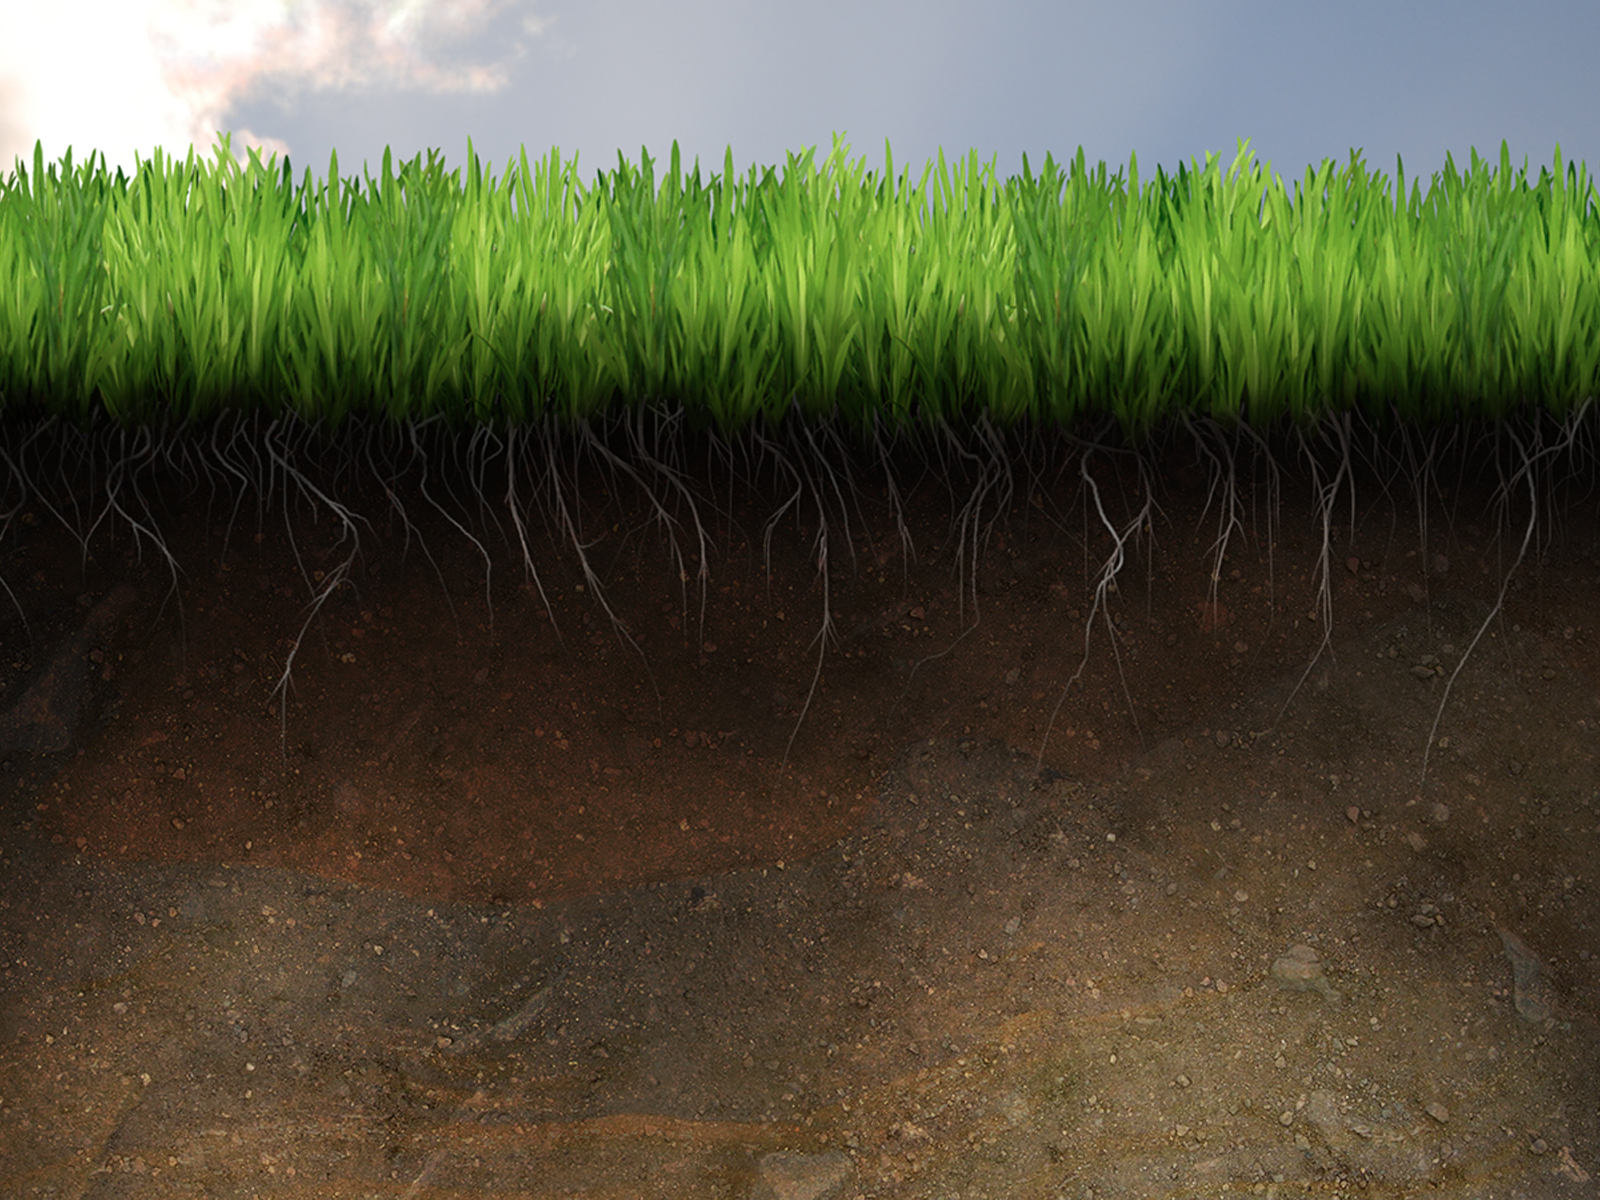 soil wallpaper,grass,vegetation,green,marsh,soil